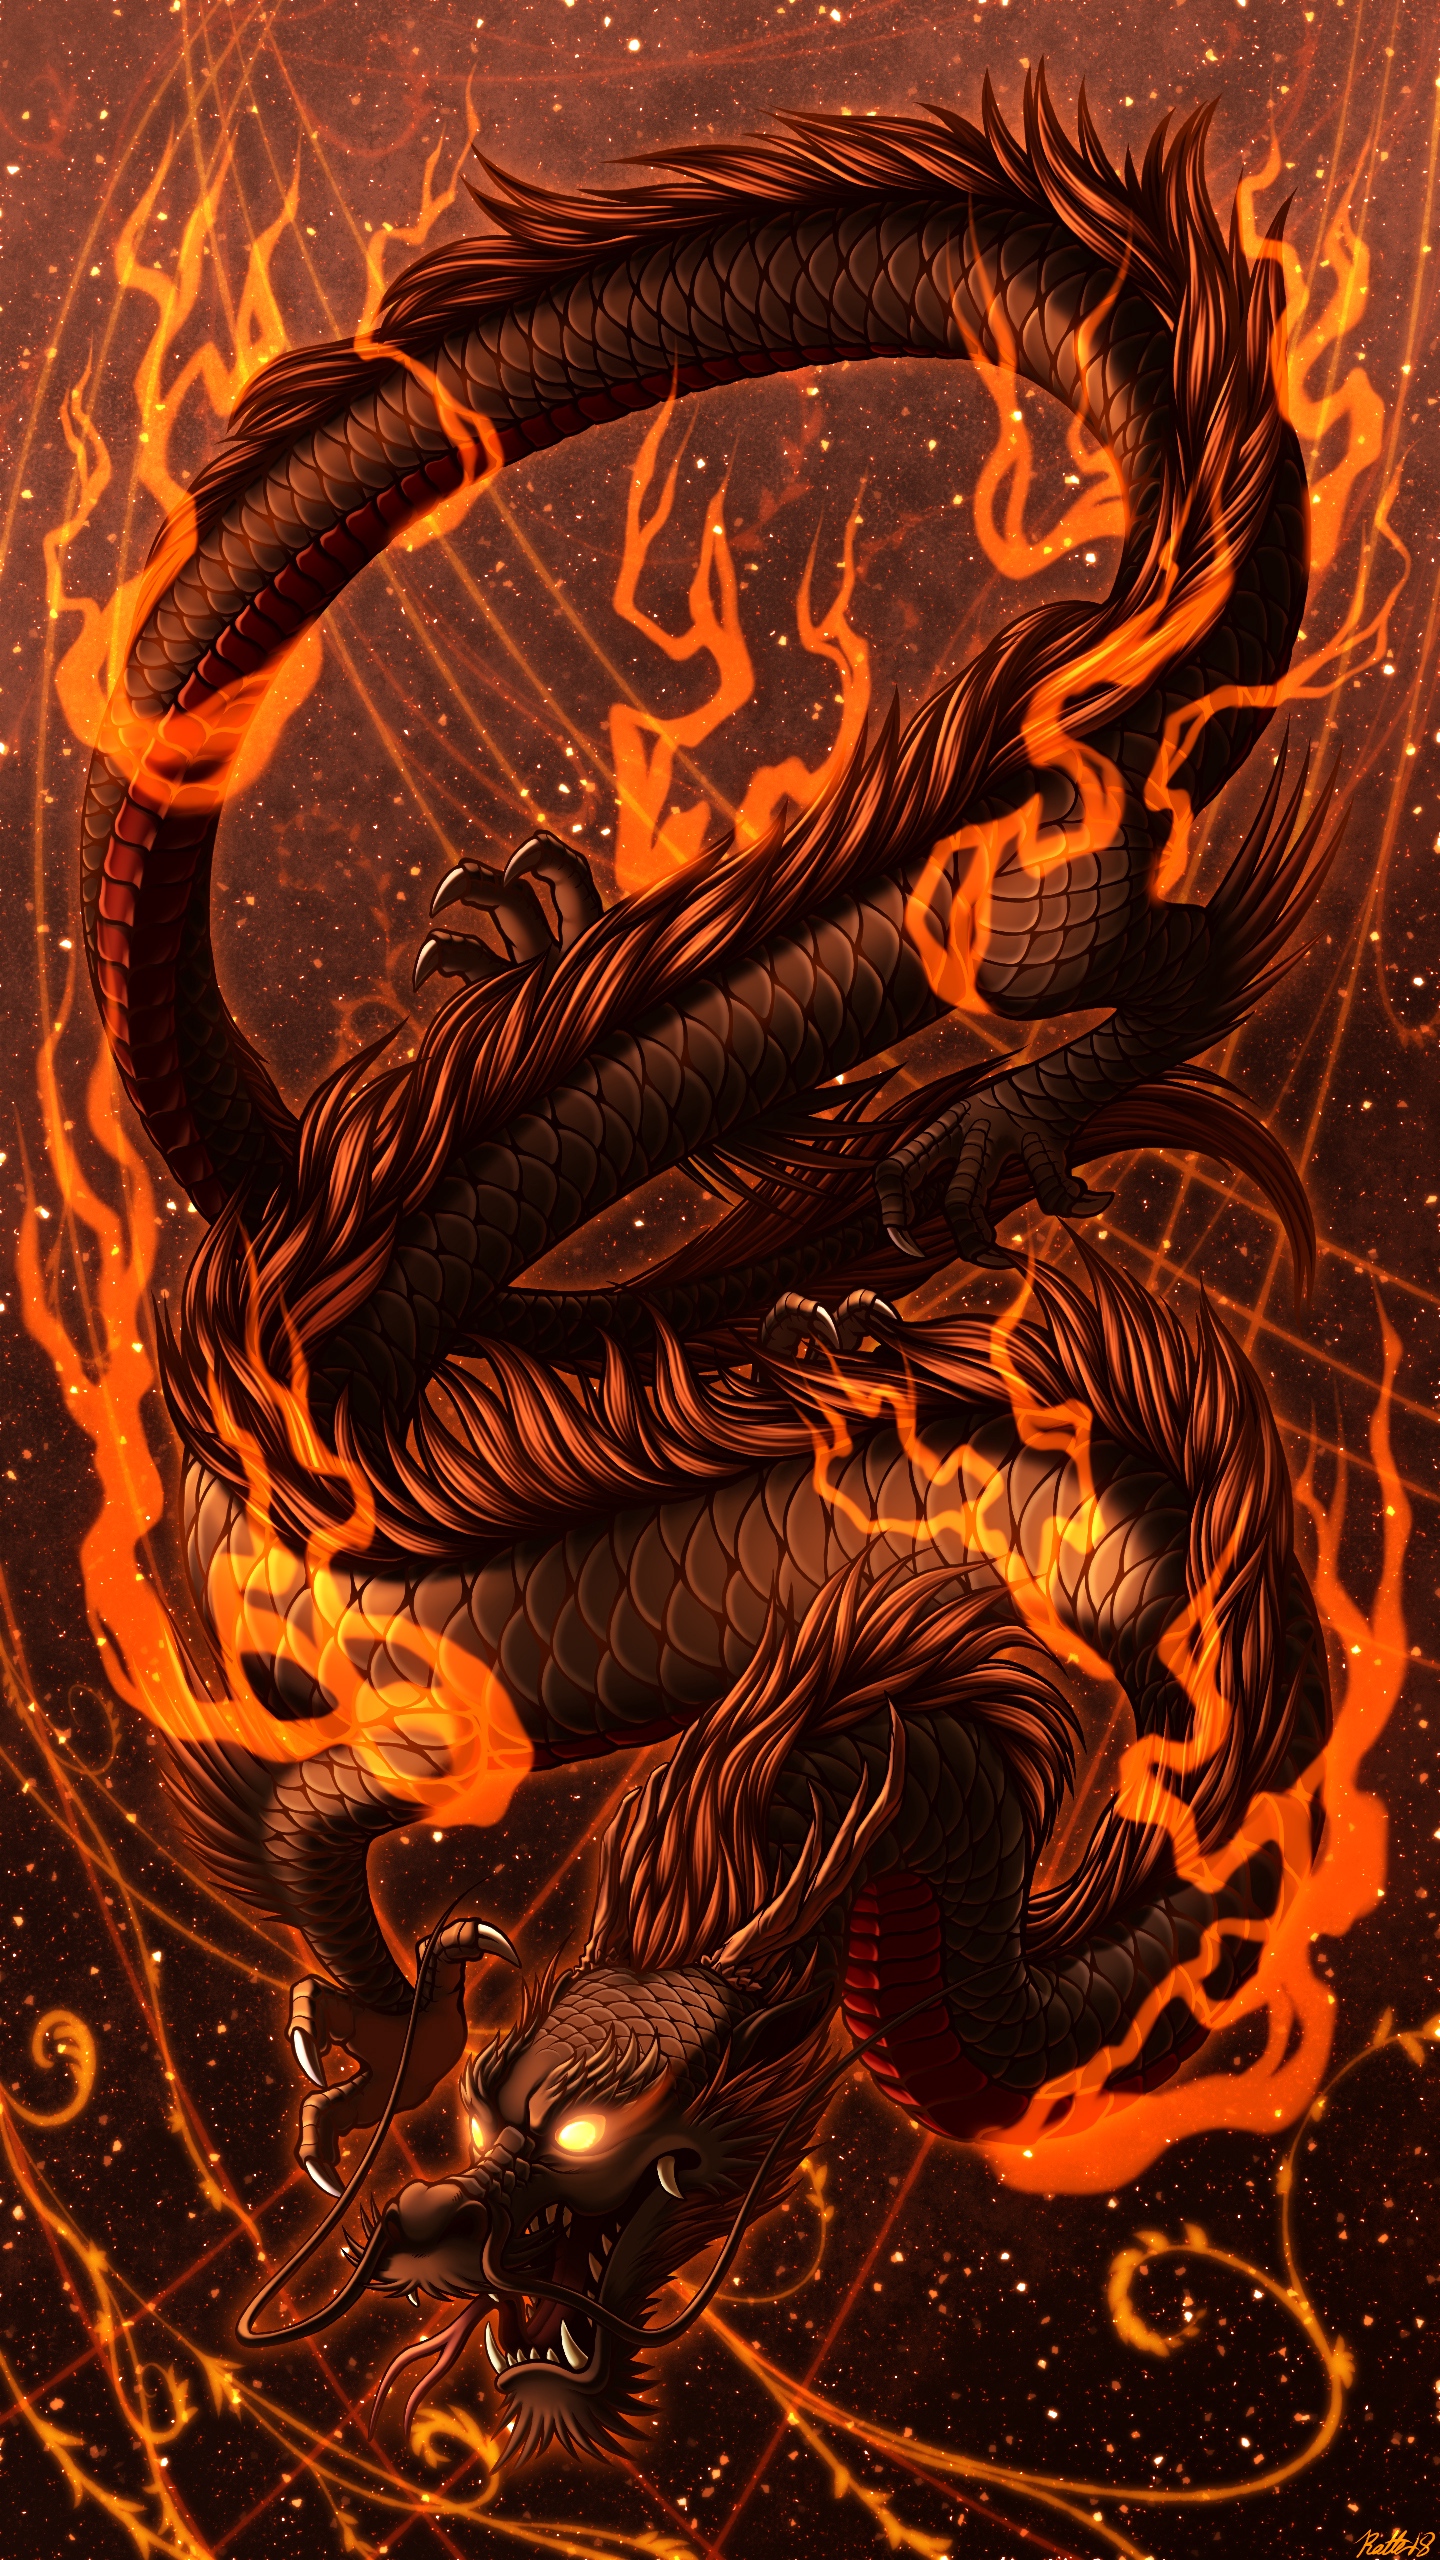 Огнедышащий дракон картинки